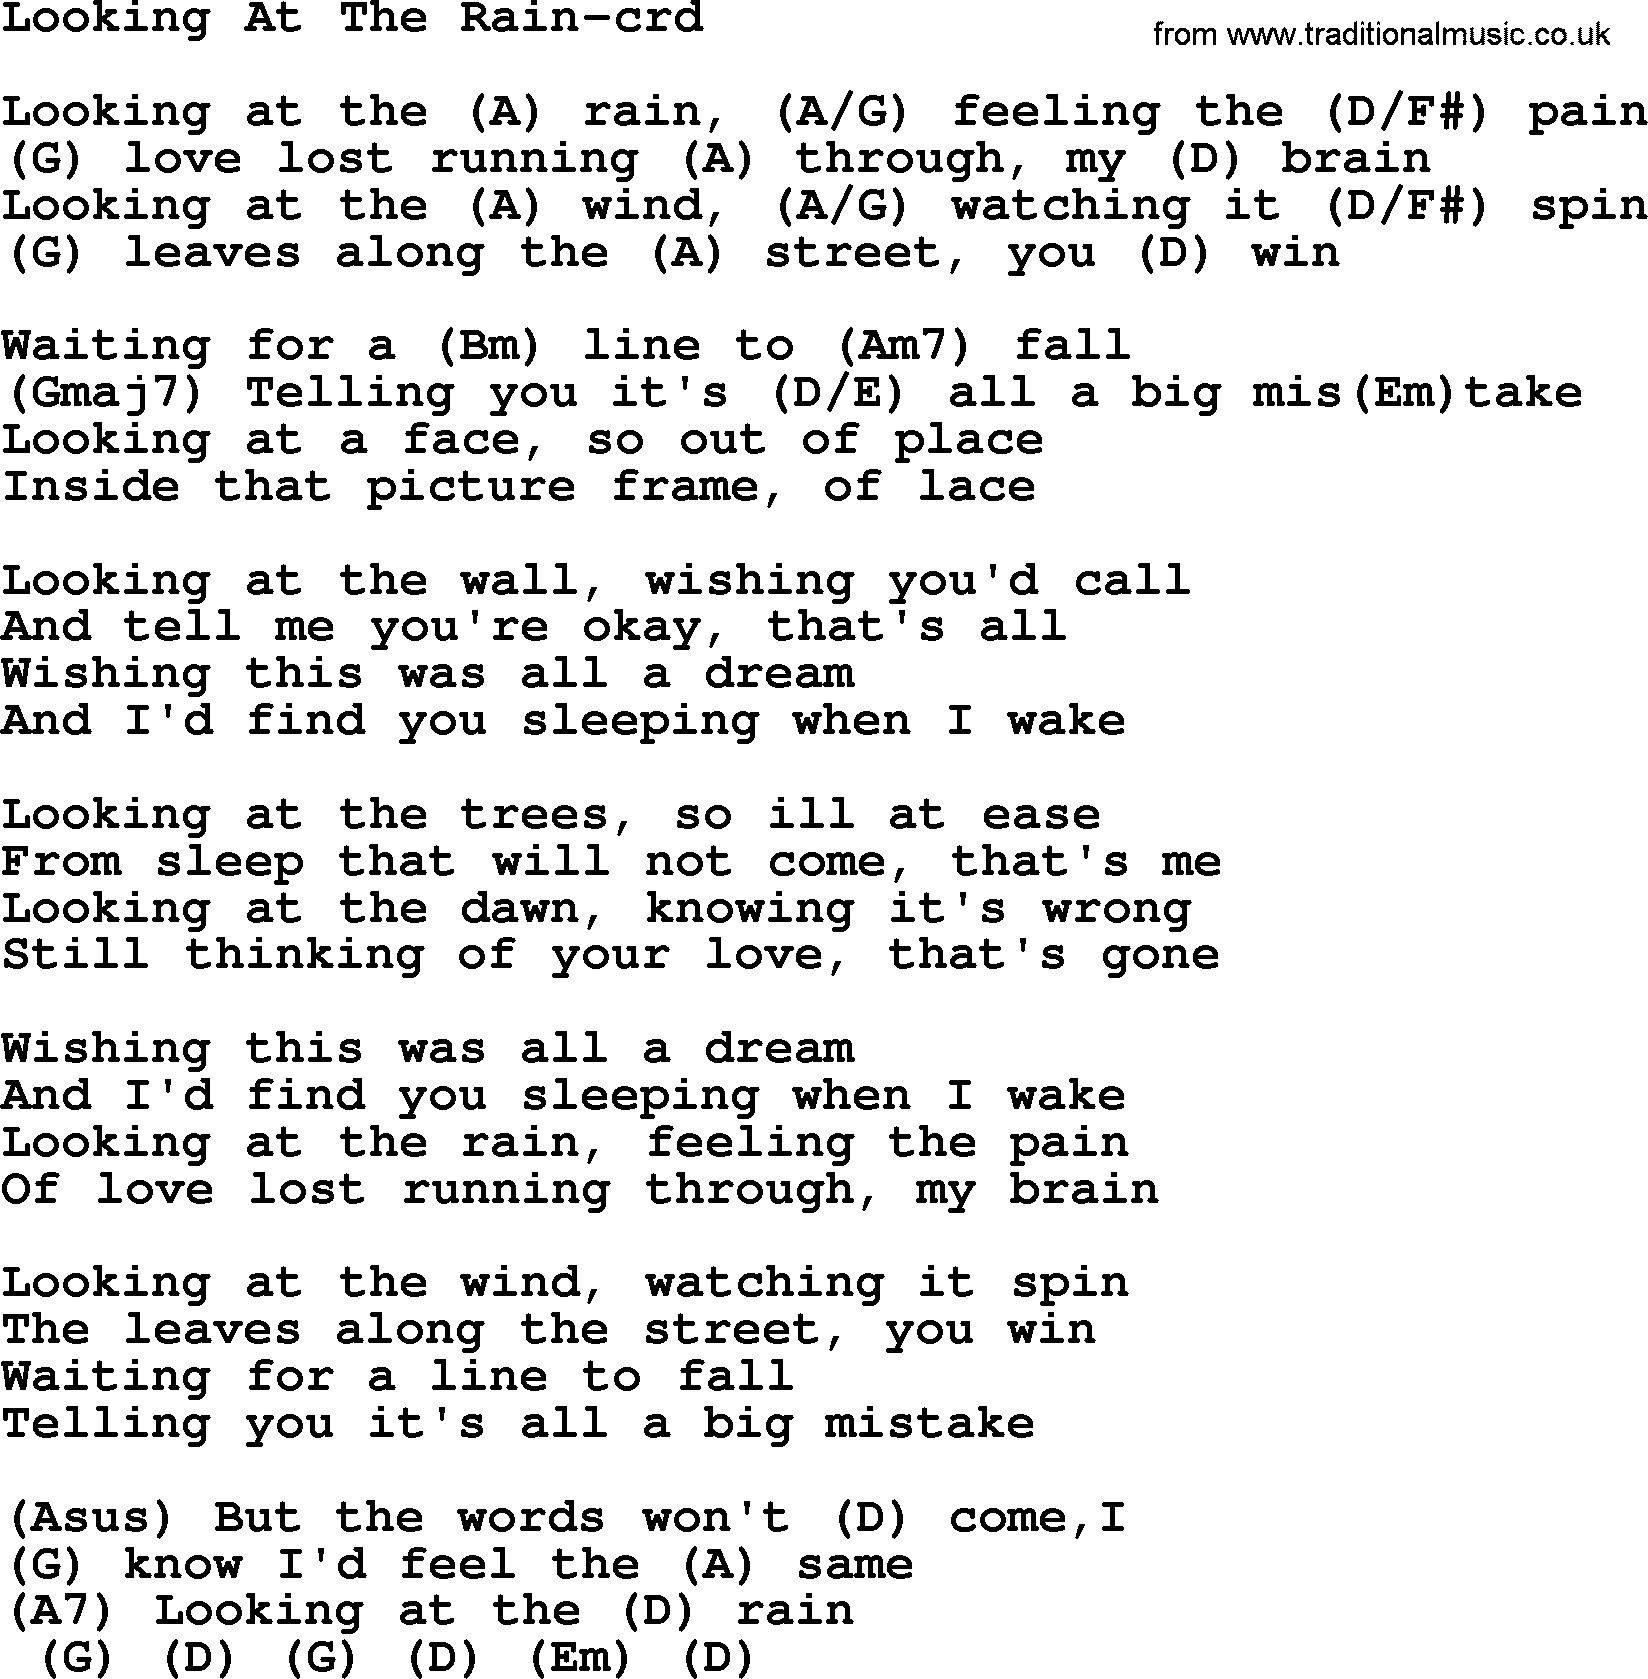 Gordon Lightfoot song Looking At The Rain, lyrics and chords